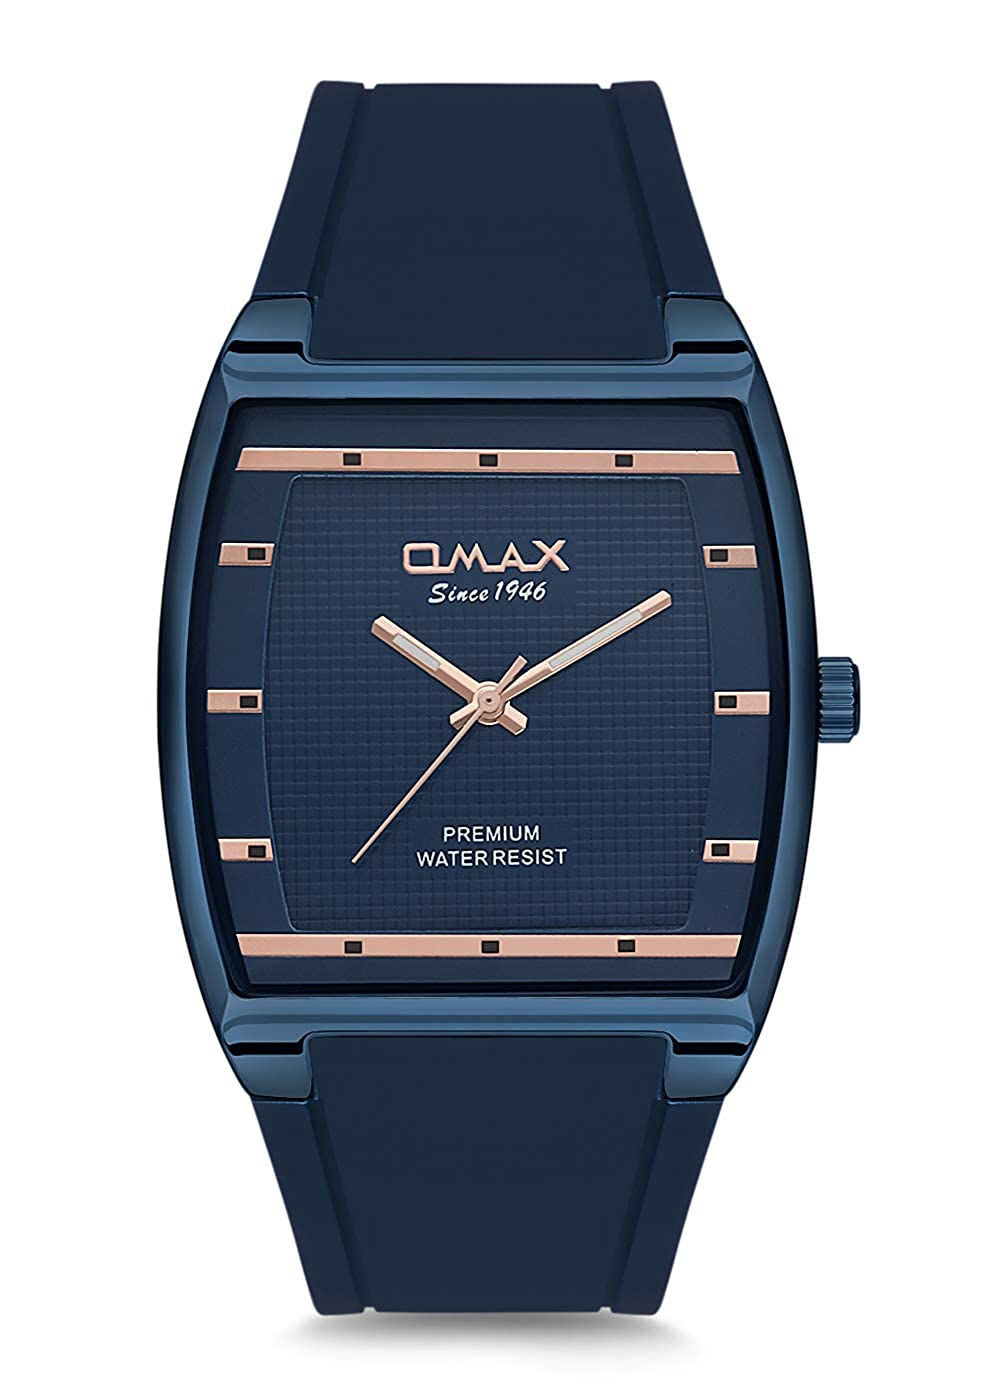 Часы omax quartz. OMAX since 1946. Часы OMAX D-006. Часы OMAX since 1946 Quartz Water resist мужские. OMAX since 1946 Quartz Water resist.